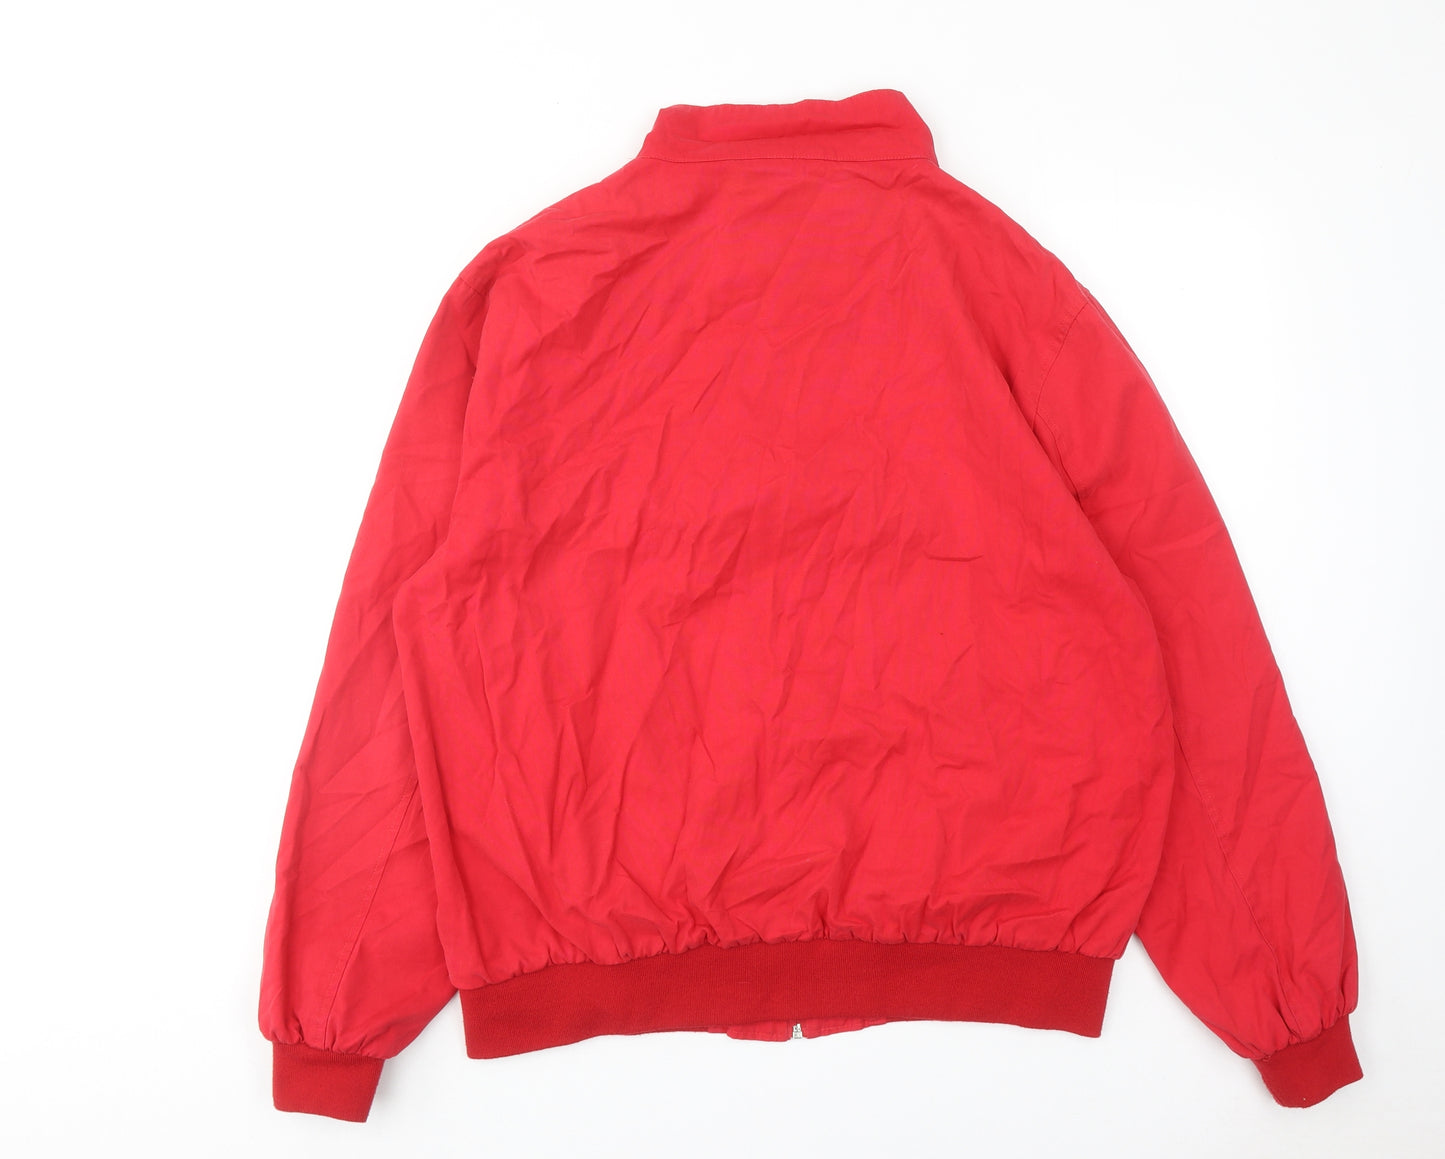 New Look Womens Red Varsity Jacket Jacket Size XL Zip